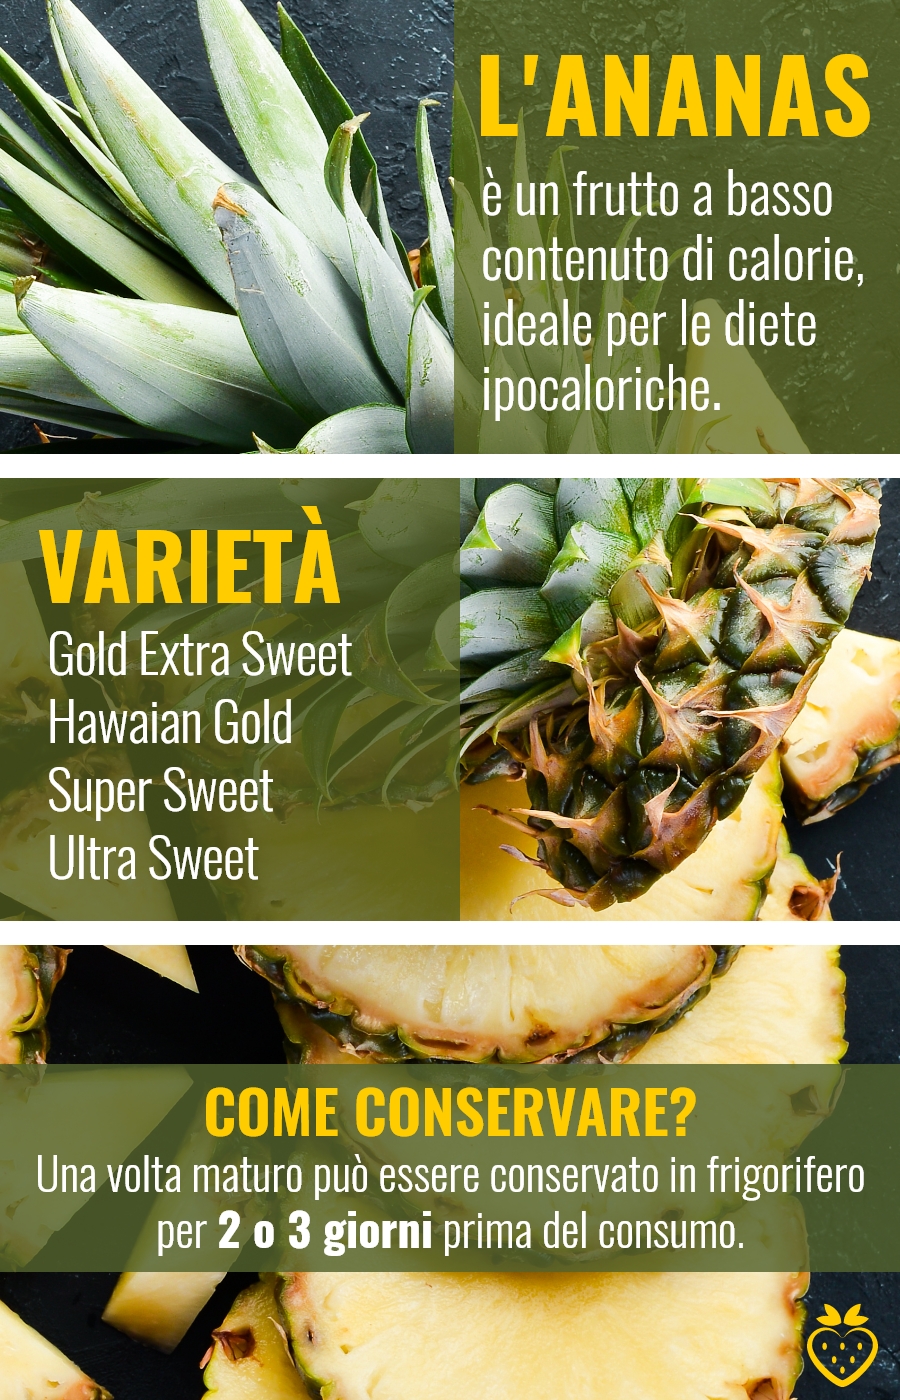 Effetti benefici dell'ananas: frutta fresca alle terme - Terme di